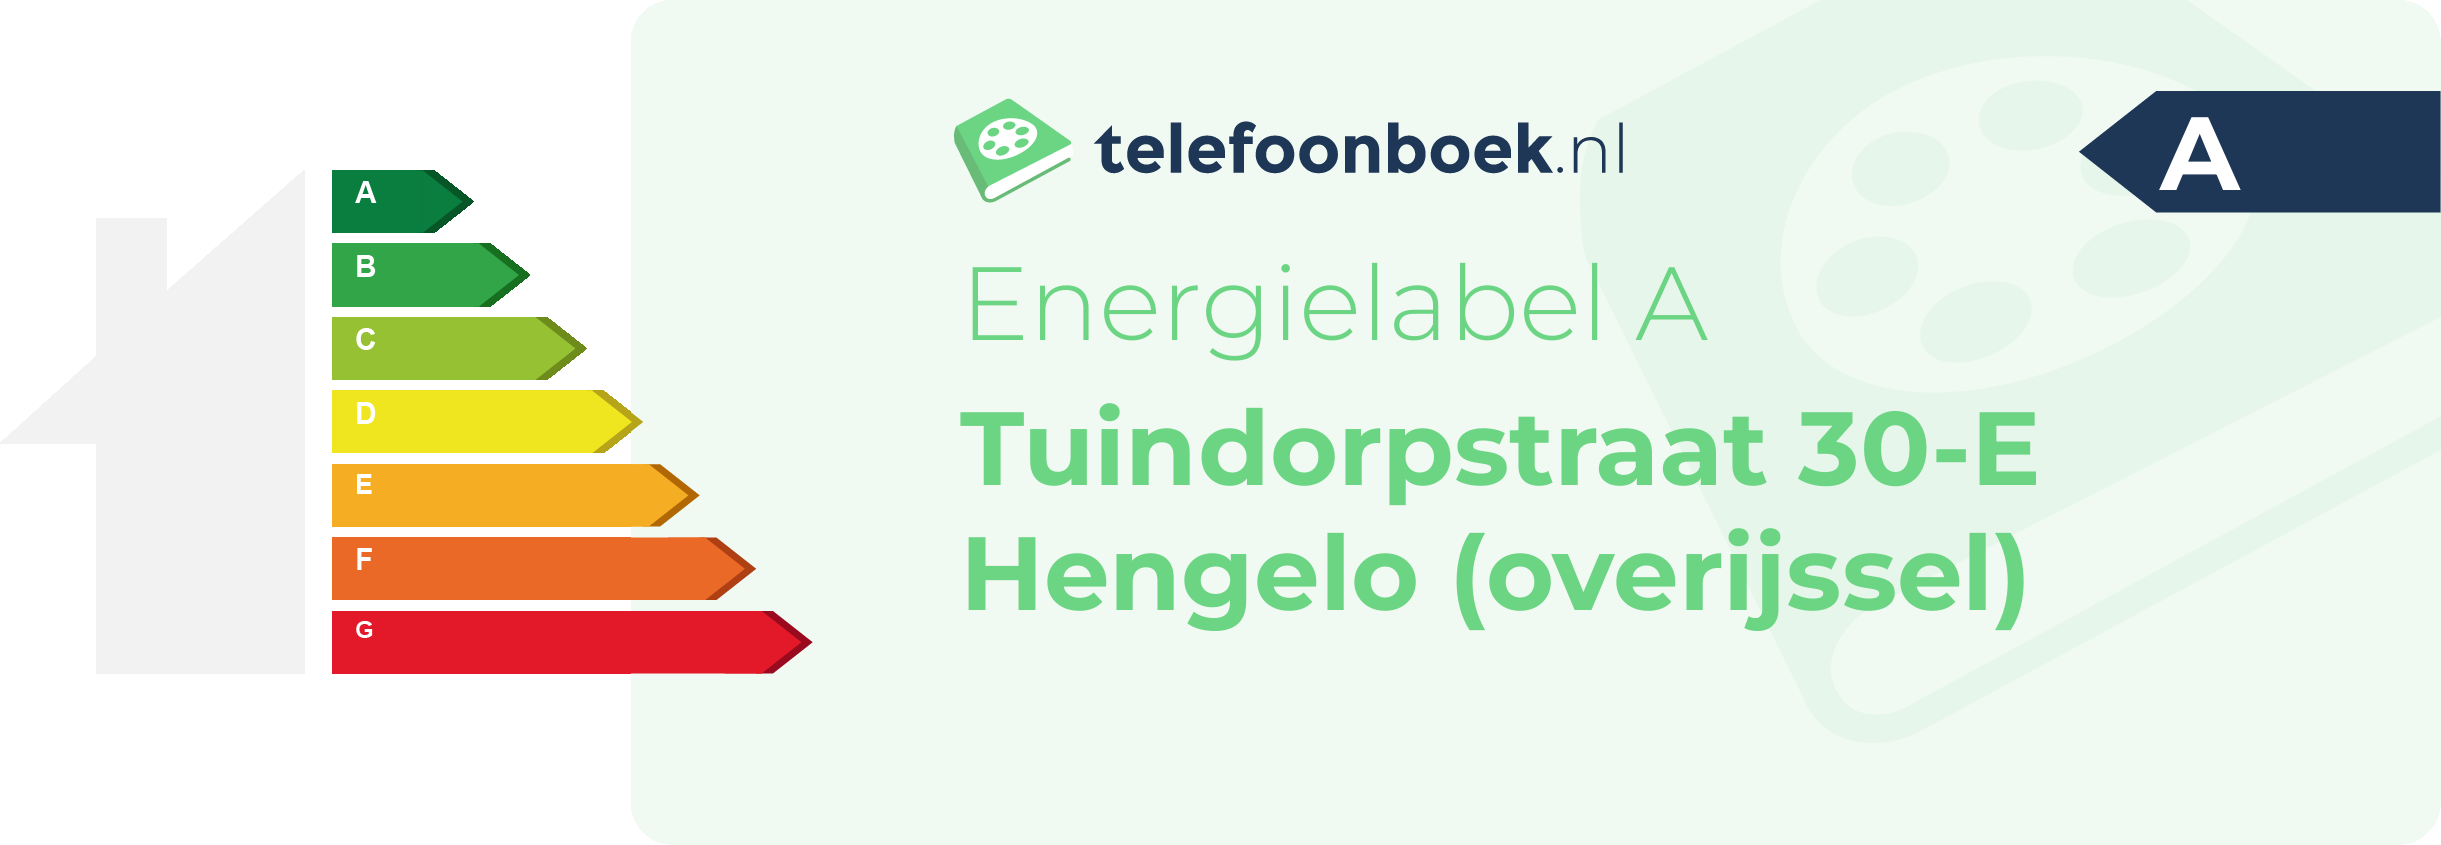 Energielabel Tuindorpstraat 30-E Hengelo (Overijssel)